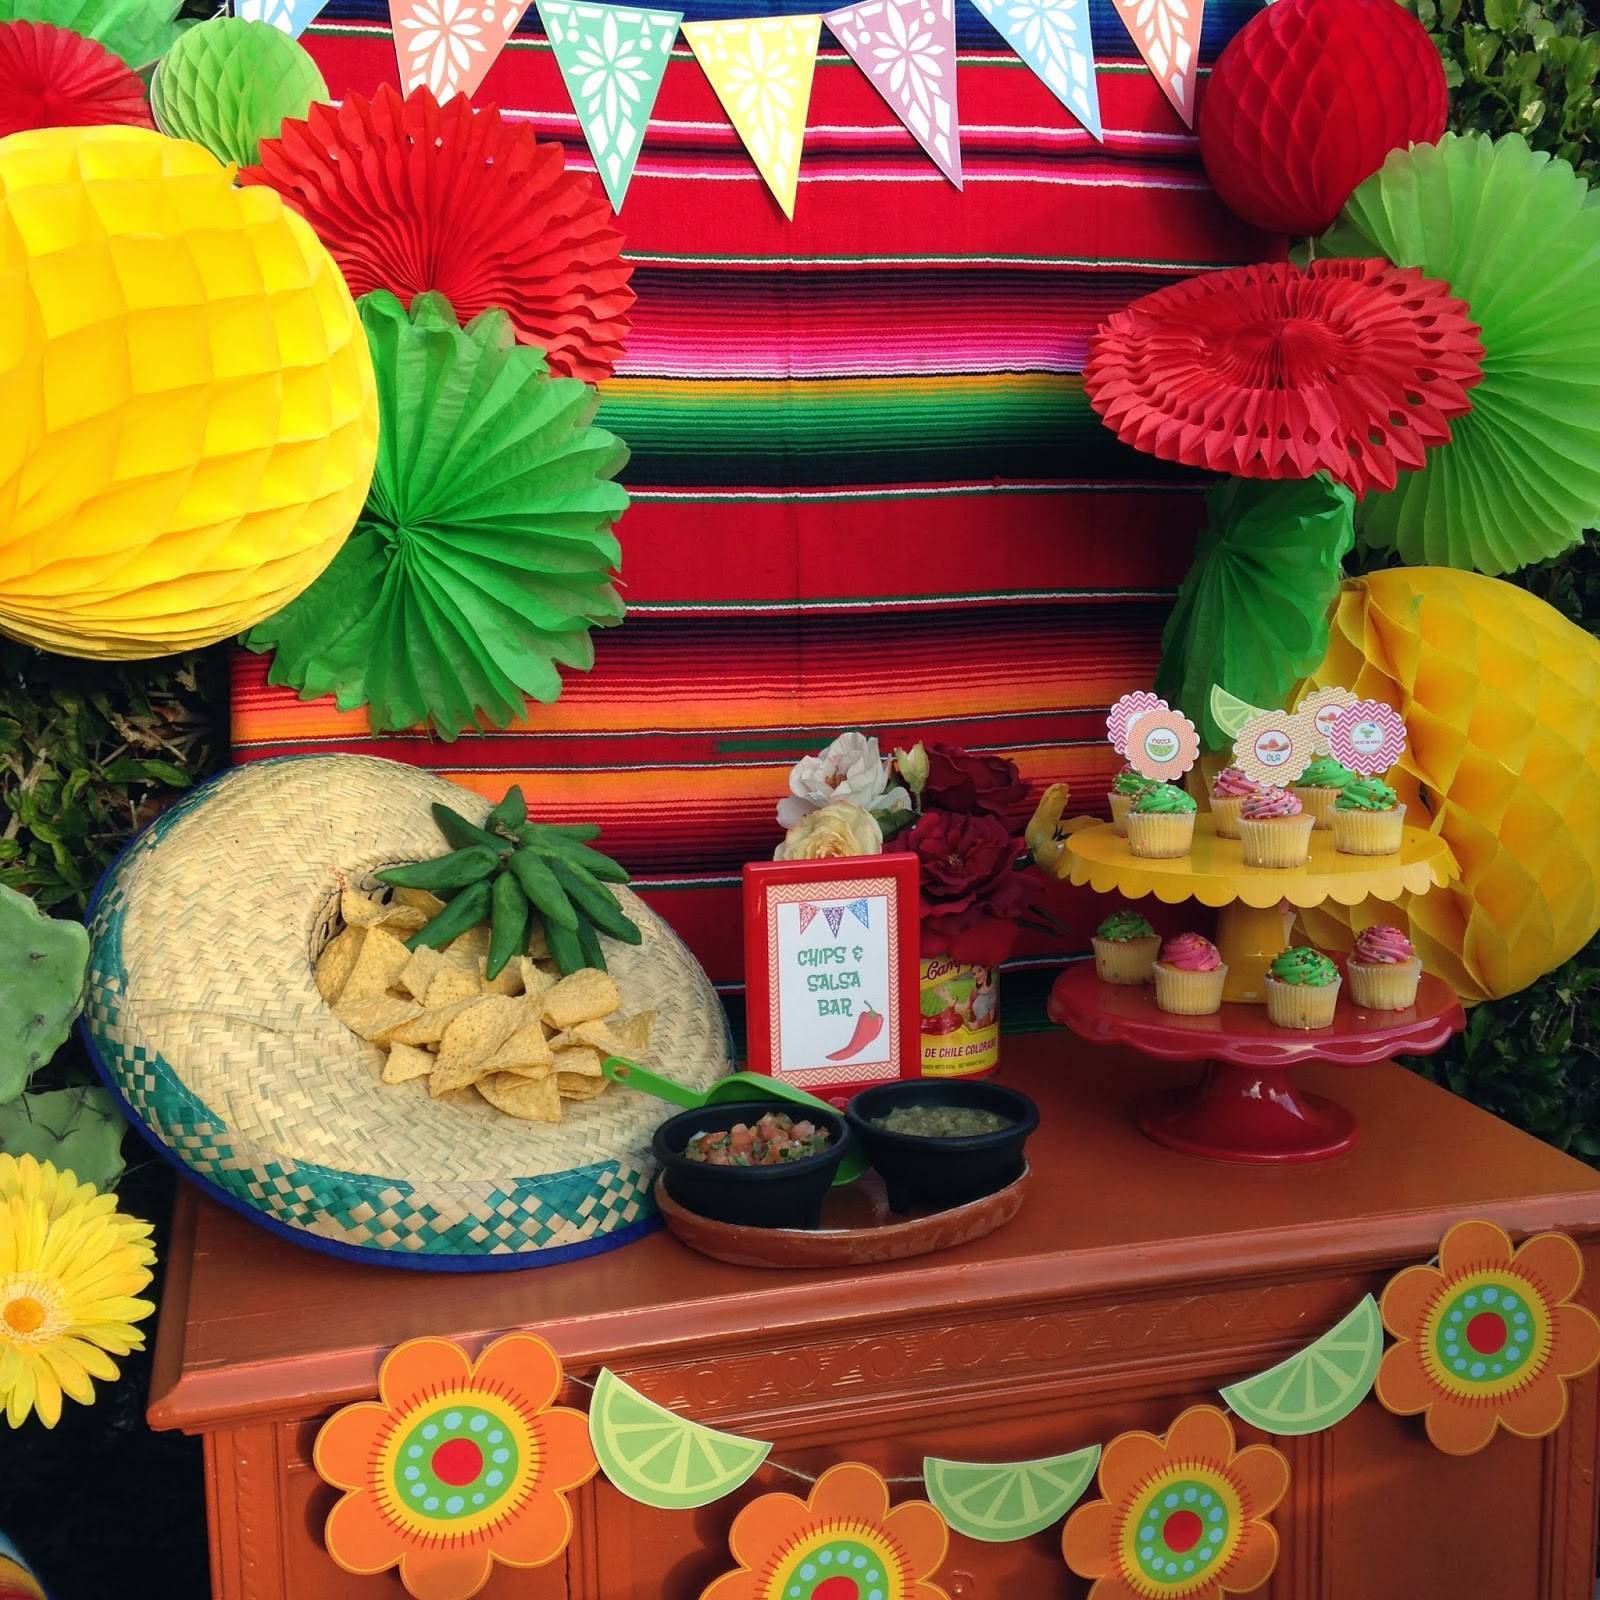 Вечеринка в мексиканском стиле - идеи, костюмы и атрибутика для мексиканской вечеринки